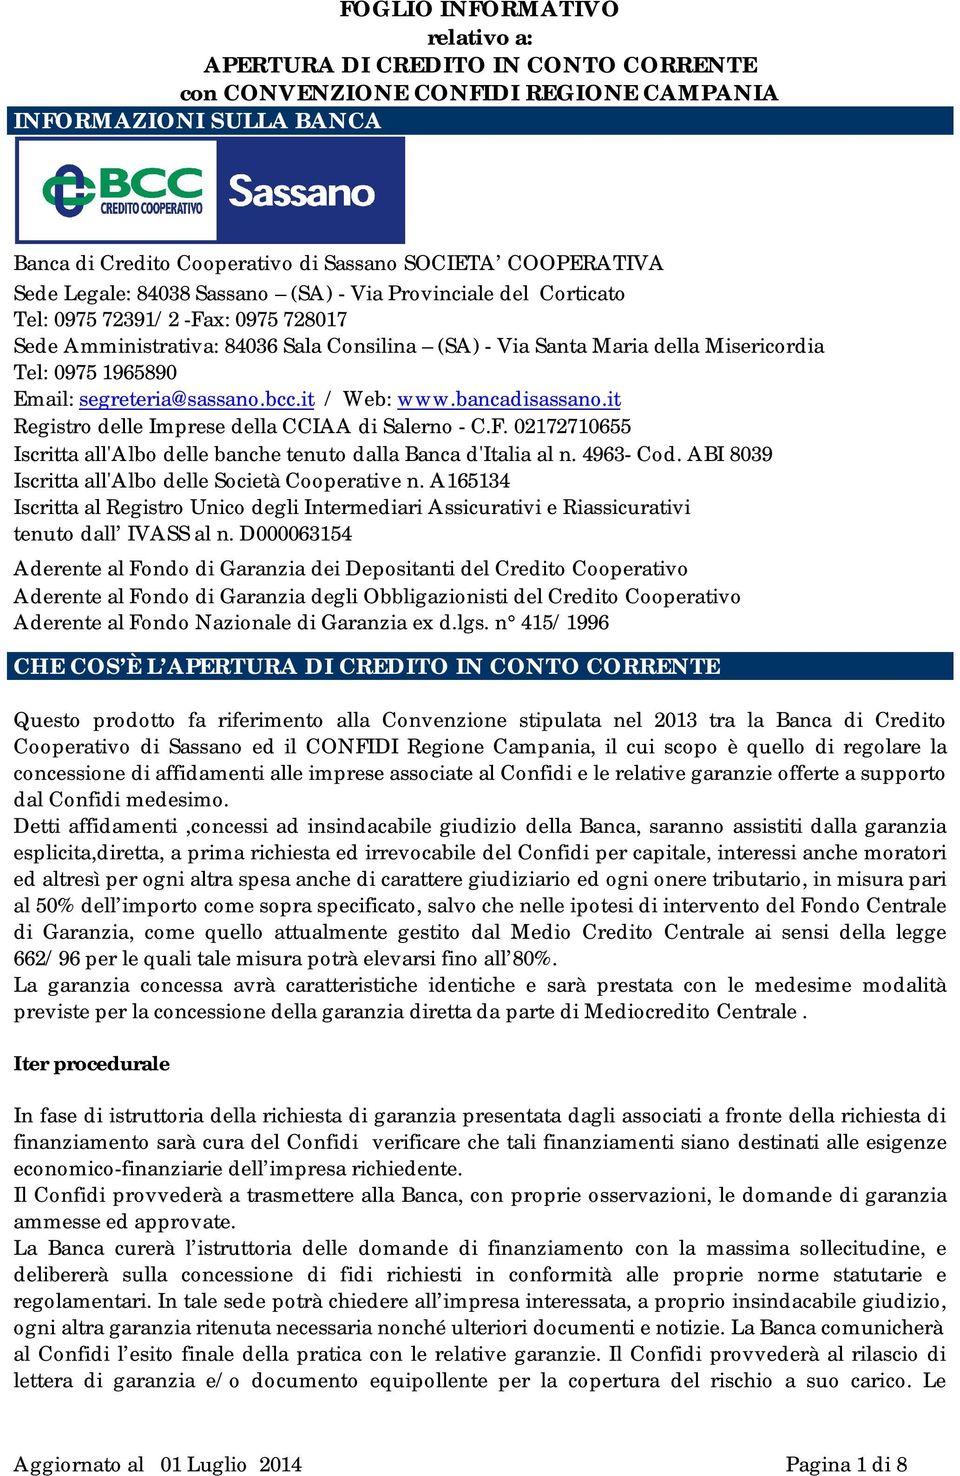 Email: segreteria@sassano.bcc.it / Web: www.bancadisassano.it Registro delle Imprese della CCIAA di Salerno - C.F. 02172710655 Iscritta all'albo delle banche tenuto dalla Banca d'italia al n.